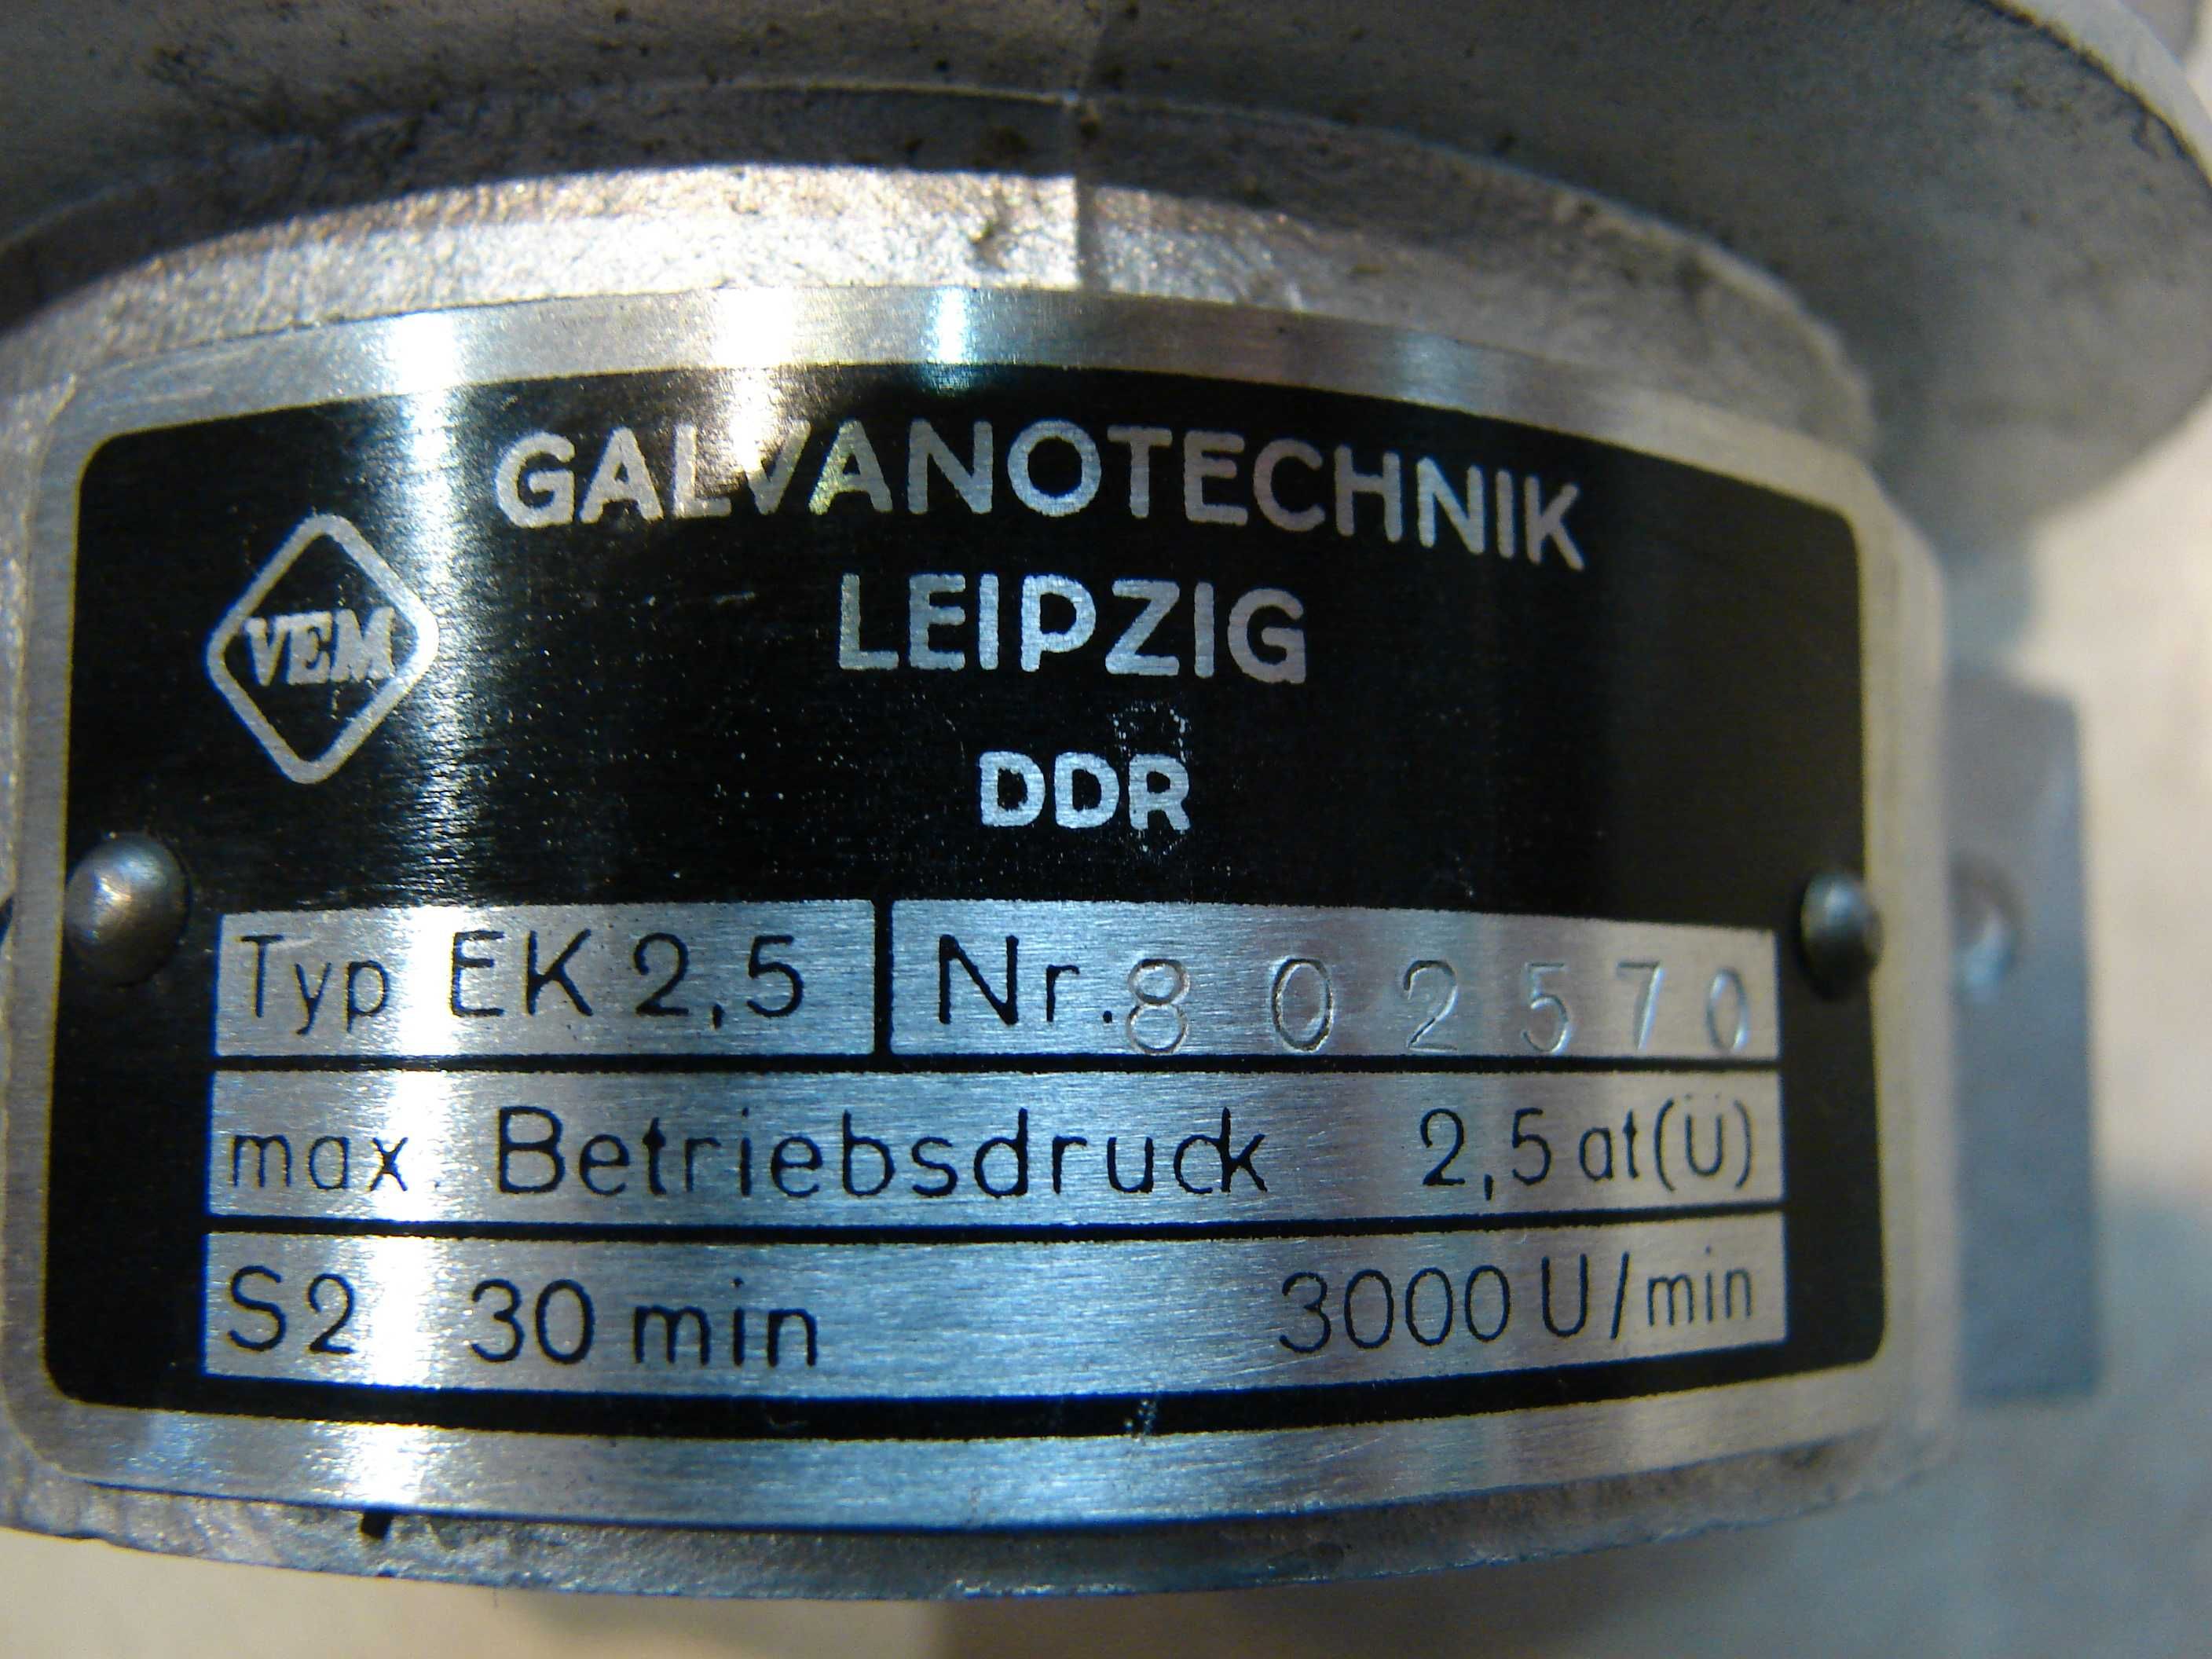 Sprężarka kompresor DDR Galvanotechnik Leipzig typ EK2,5 do ES160